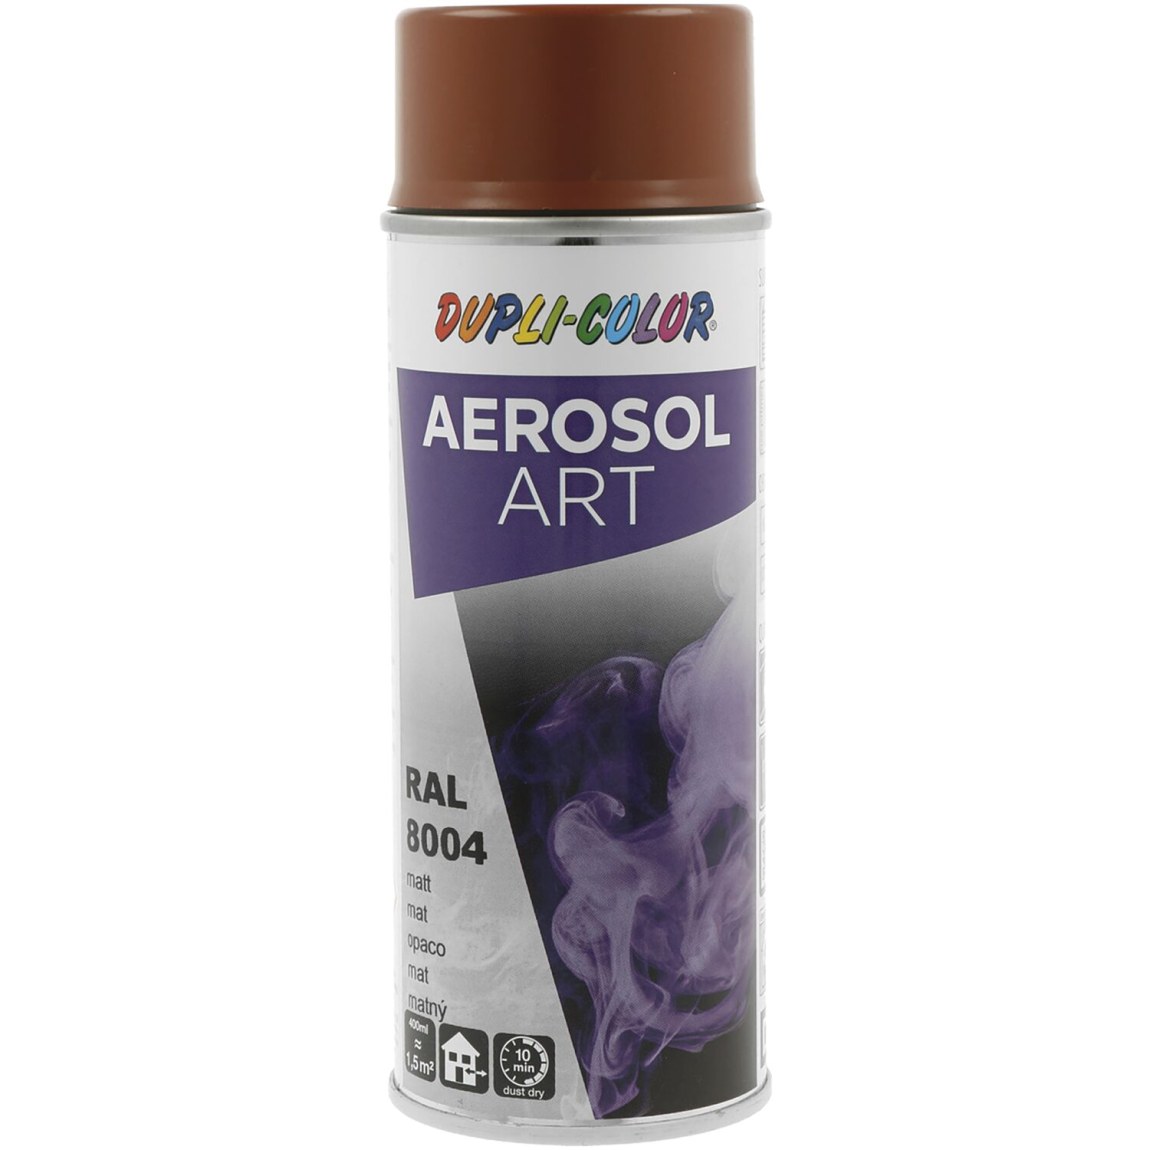 Dupli-Color Aerosol Art sprej 400 ml měděná hnědá mat / RAL 8004 - Železářství Chemicko-technické výrobky Technické aerosoly Lak ve Spreji